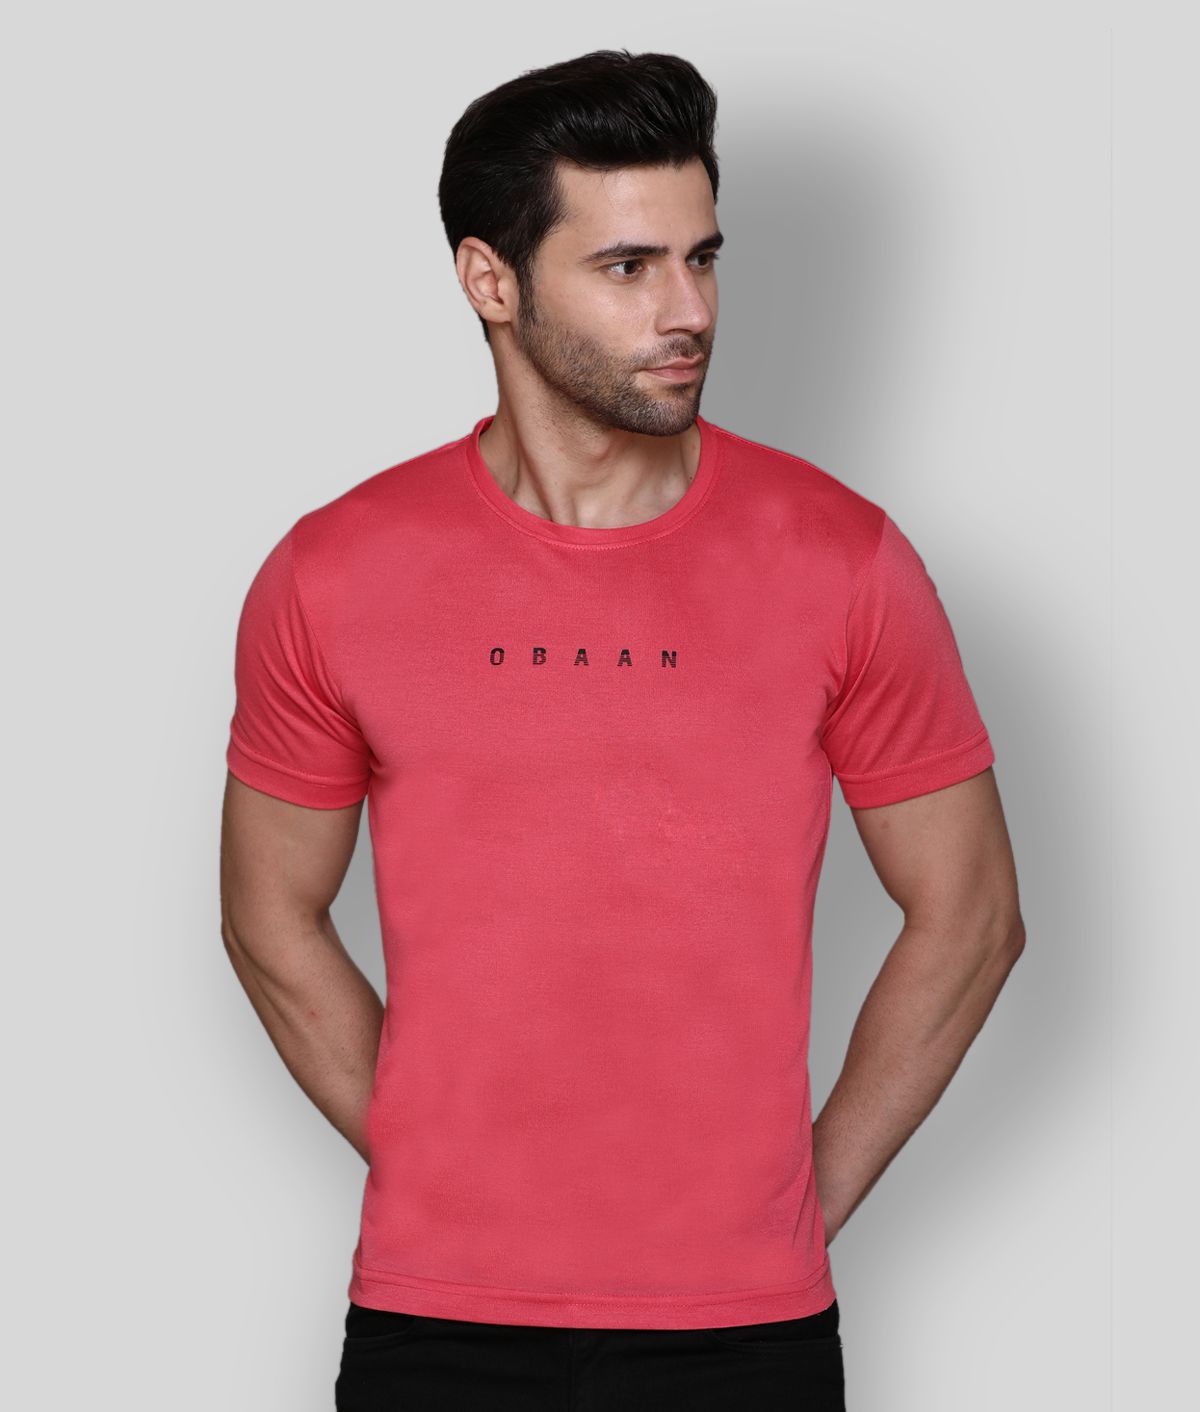     			OBAAN - Red Cotton Blend Regular Fit  Men's T-Shirt ( Pack of 1 )